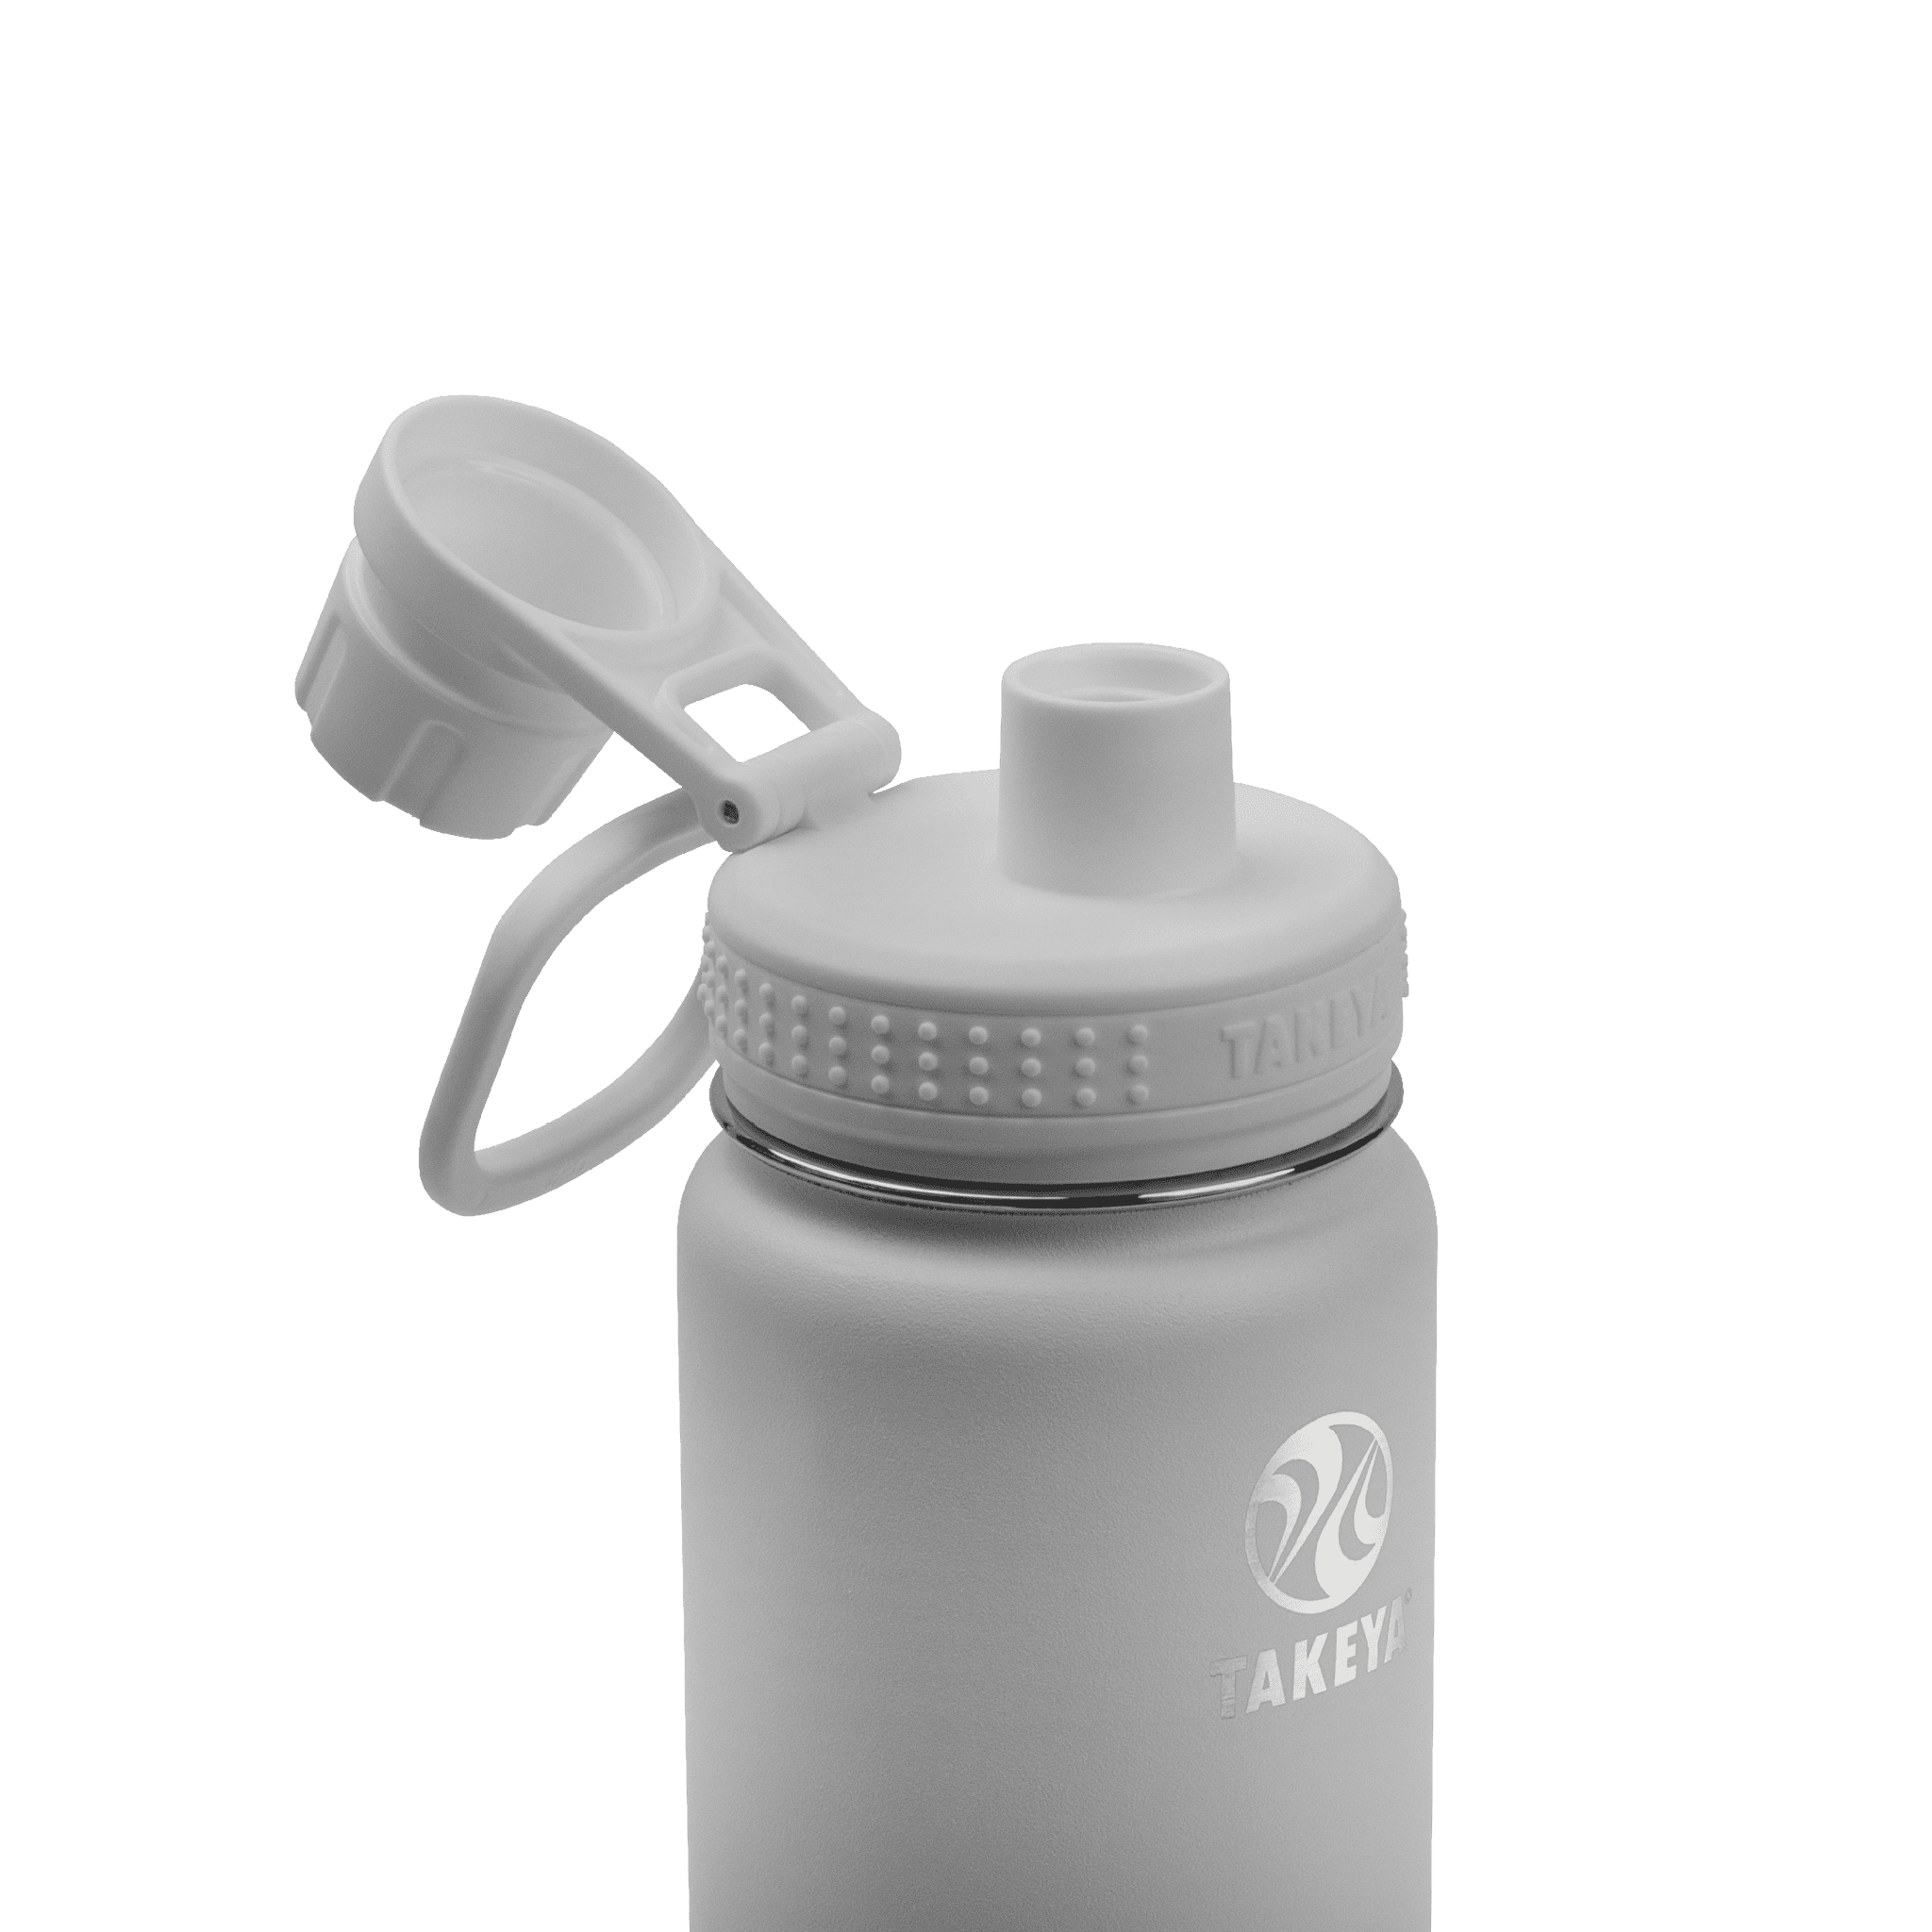 Takeya Sport Water Bottle With Spout Lid – Bala